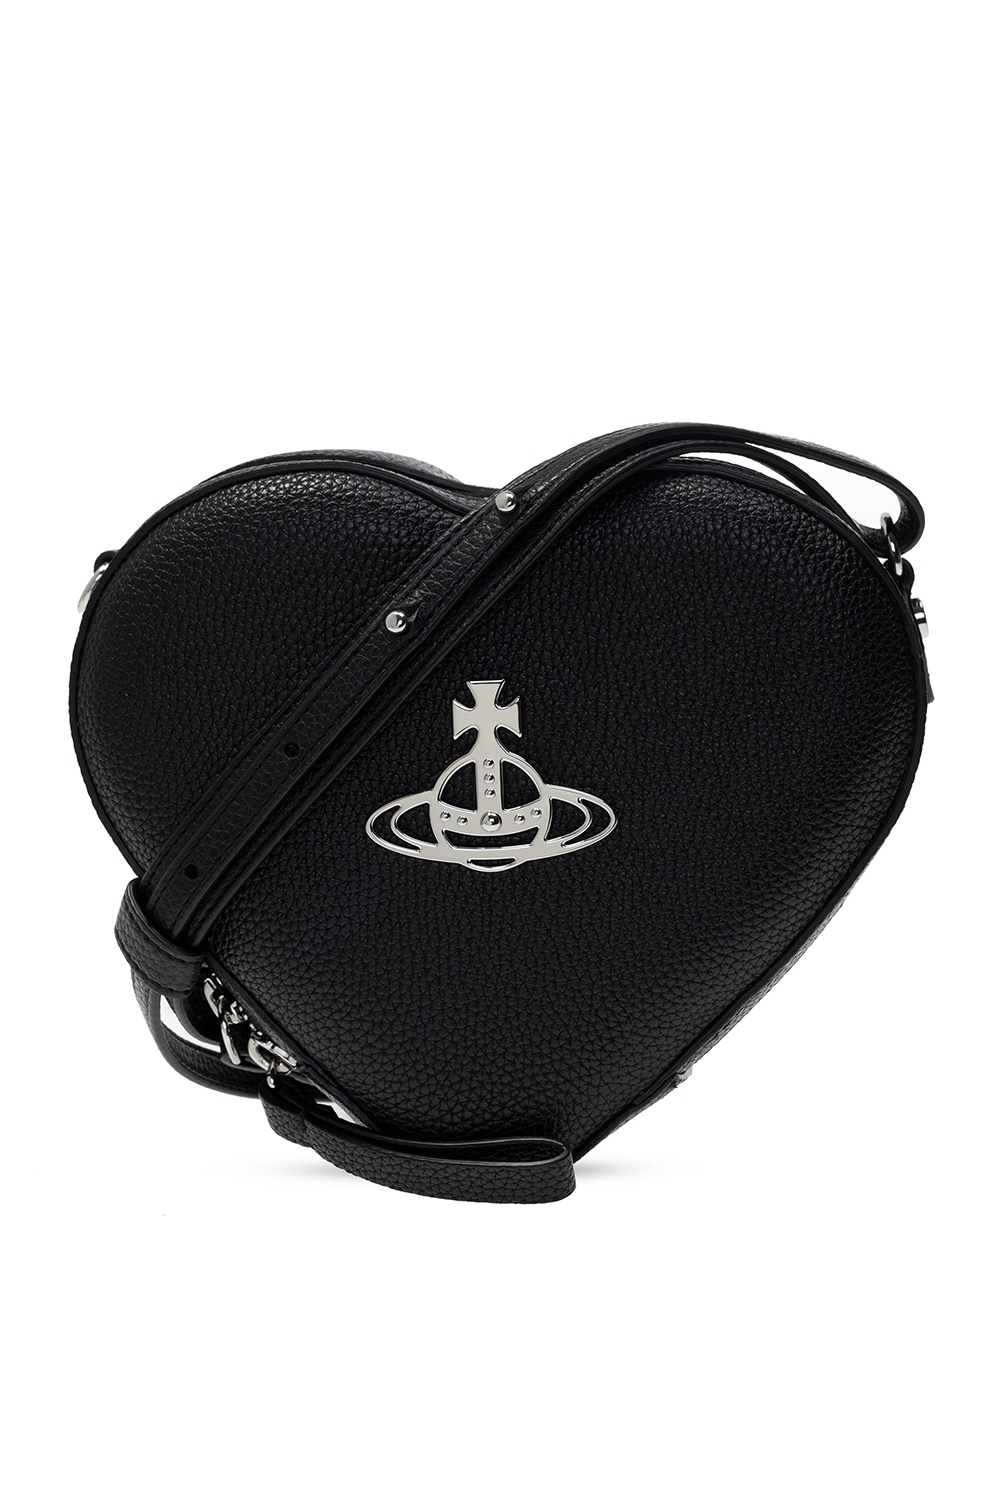 Vivienne Westwood Heart Shoulder Bag Backpack 2way Check [Used]